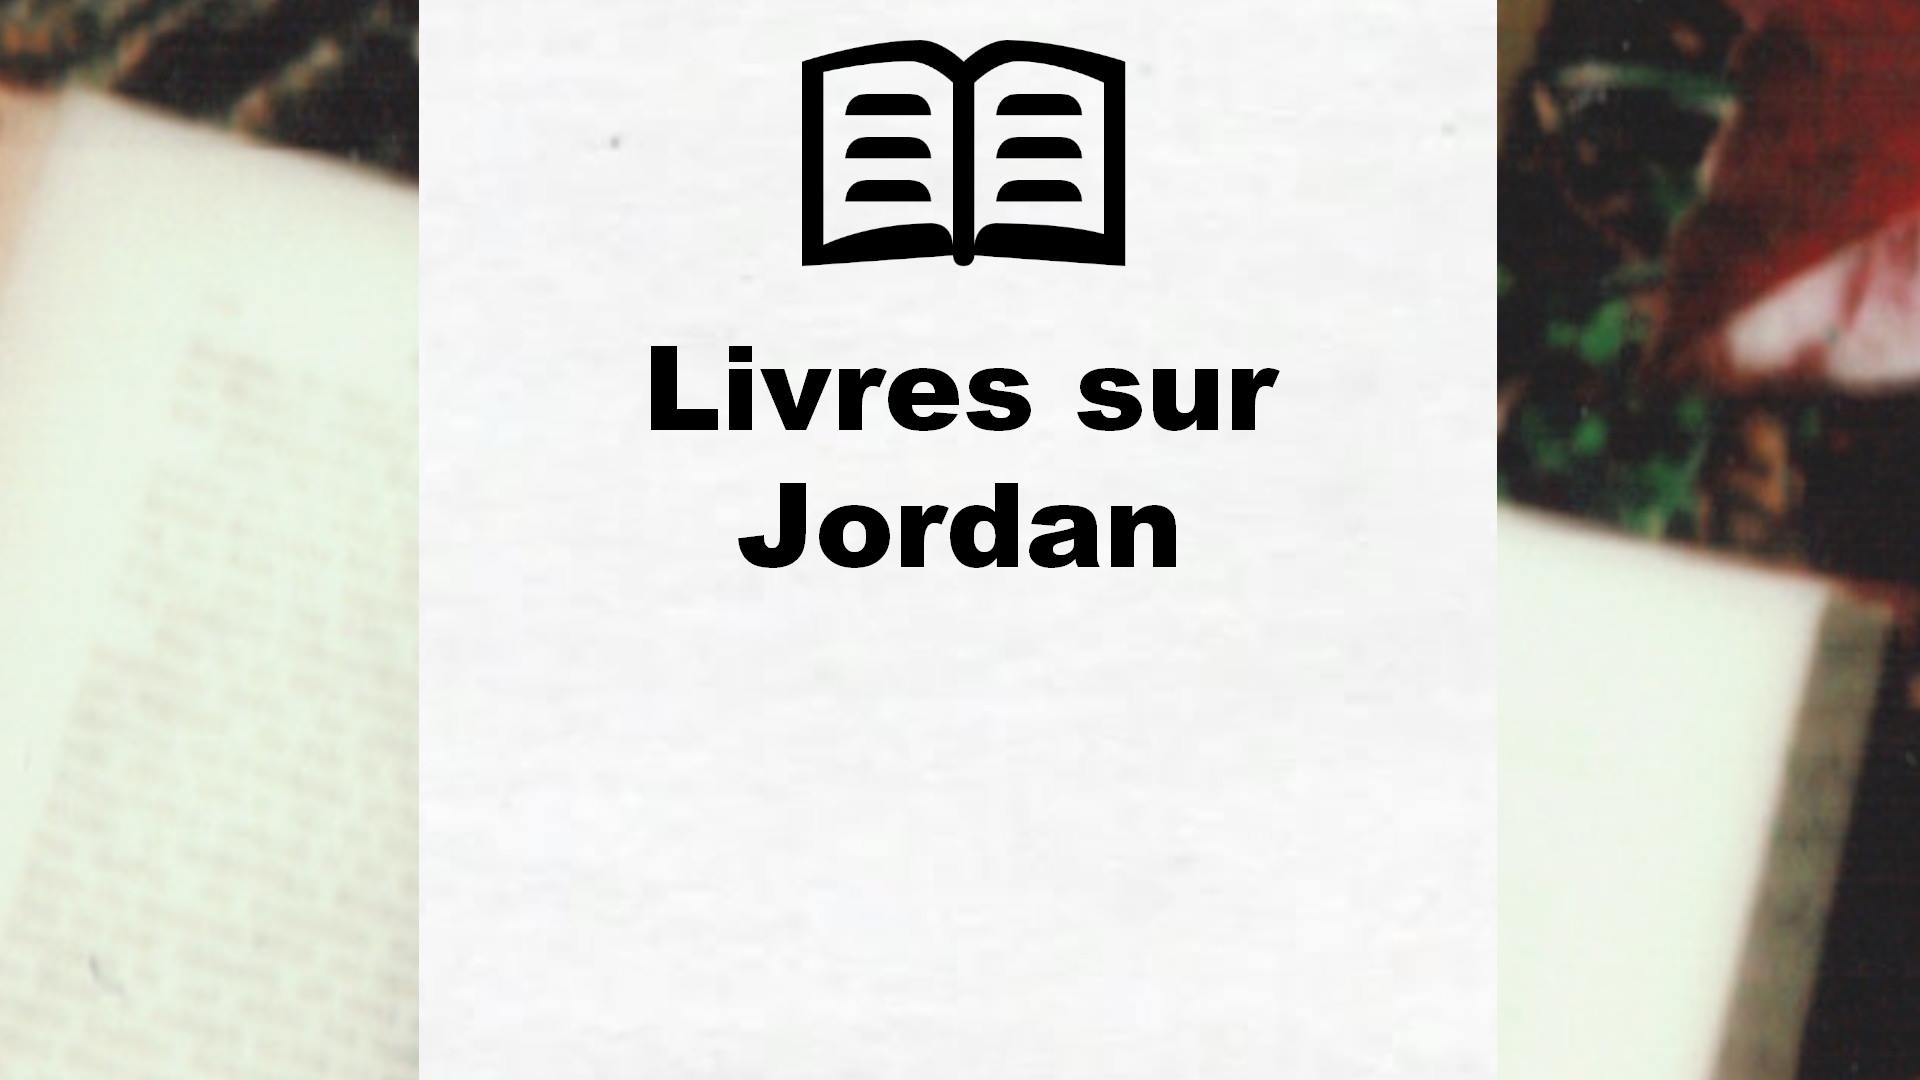 Livres sur Jordan